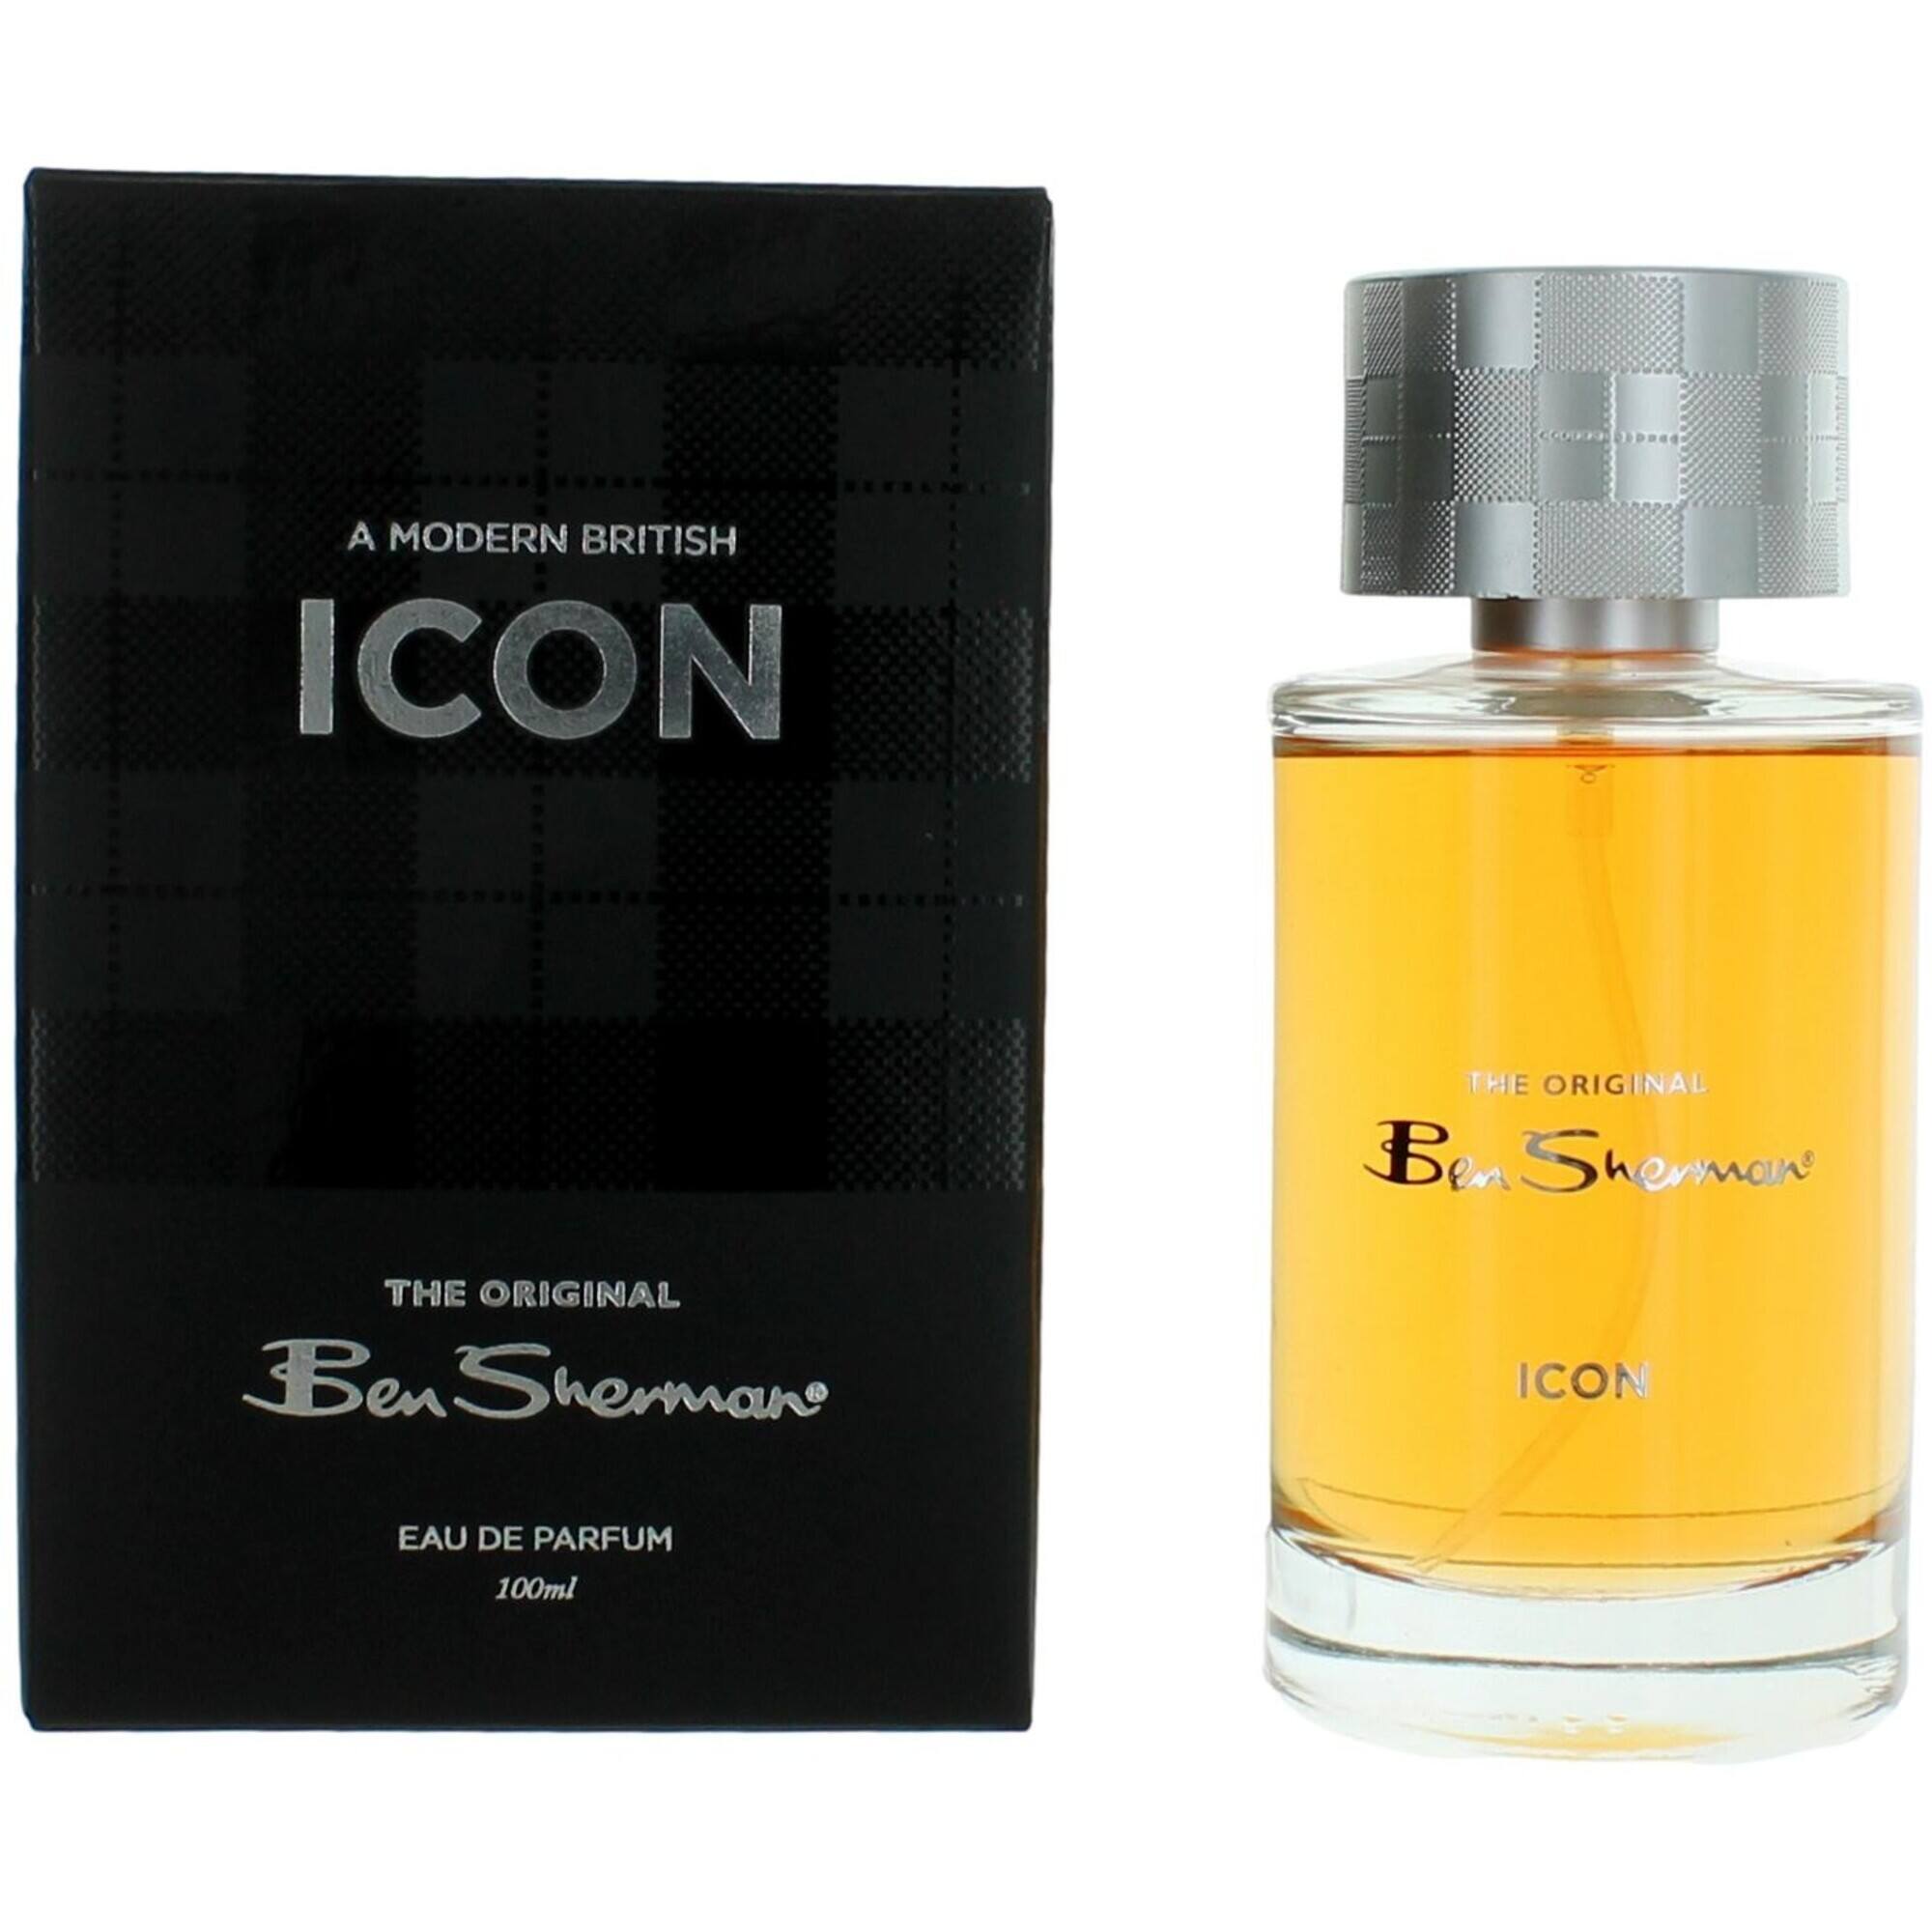 Ben Sherman Men's Eau De Parfum Spray - Icon with Hints of Tobacco Fine, 3.4 oz